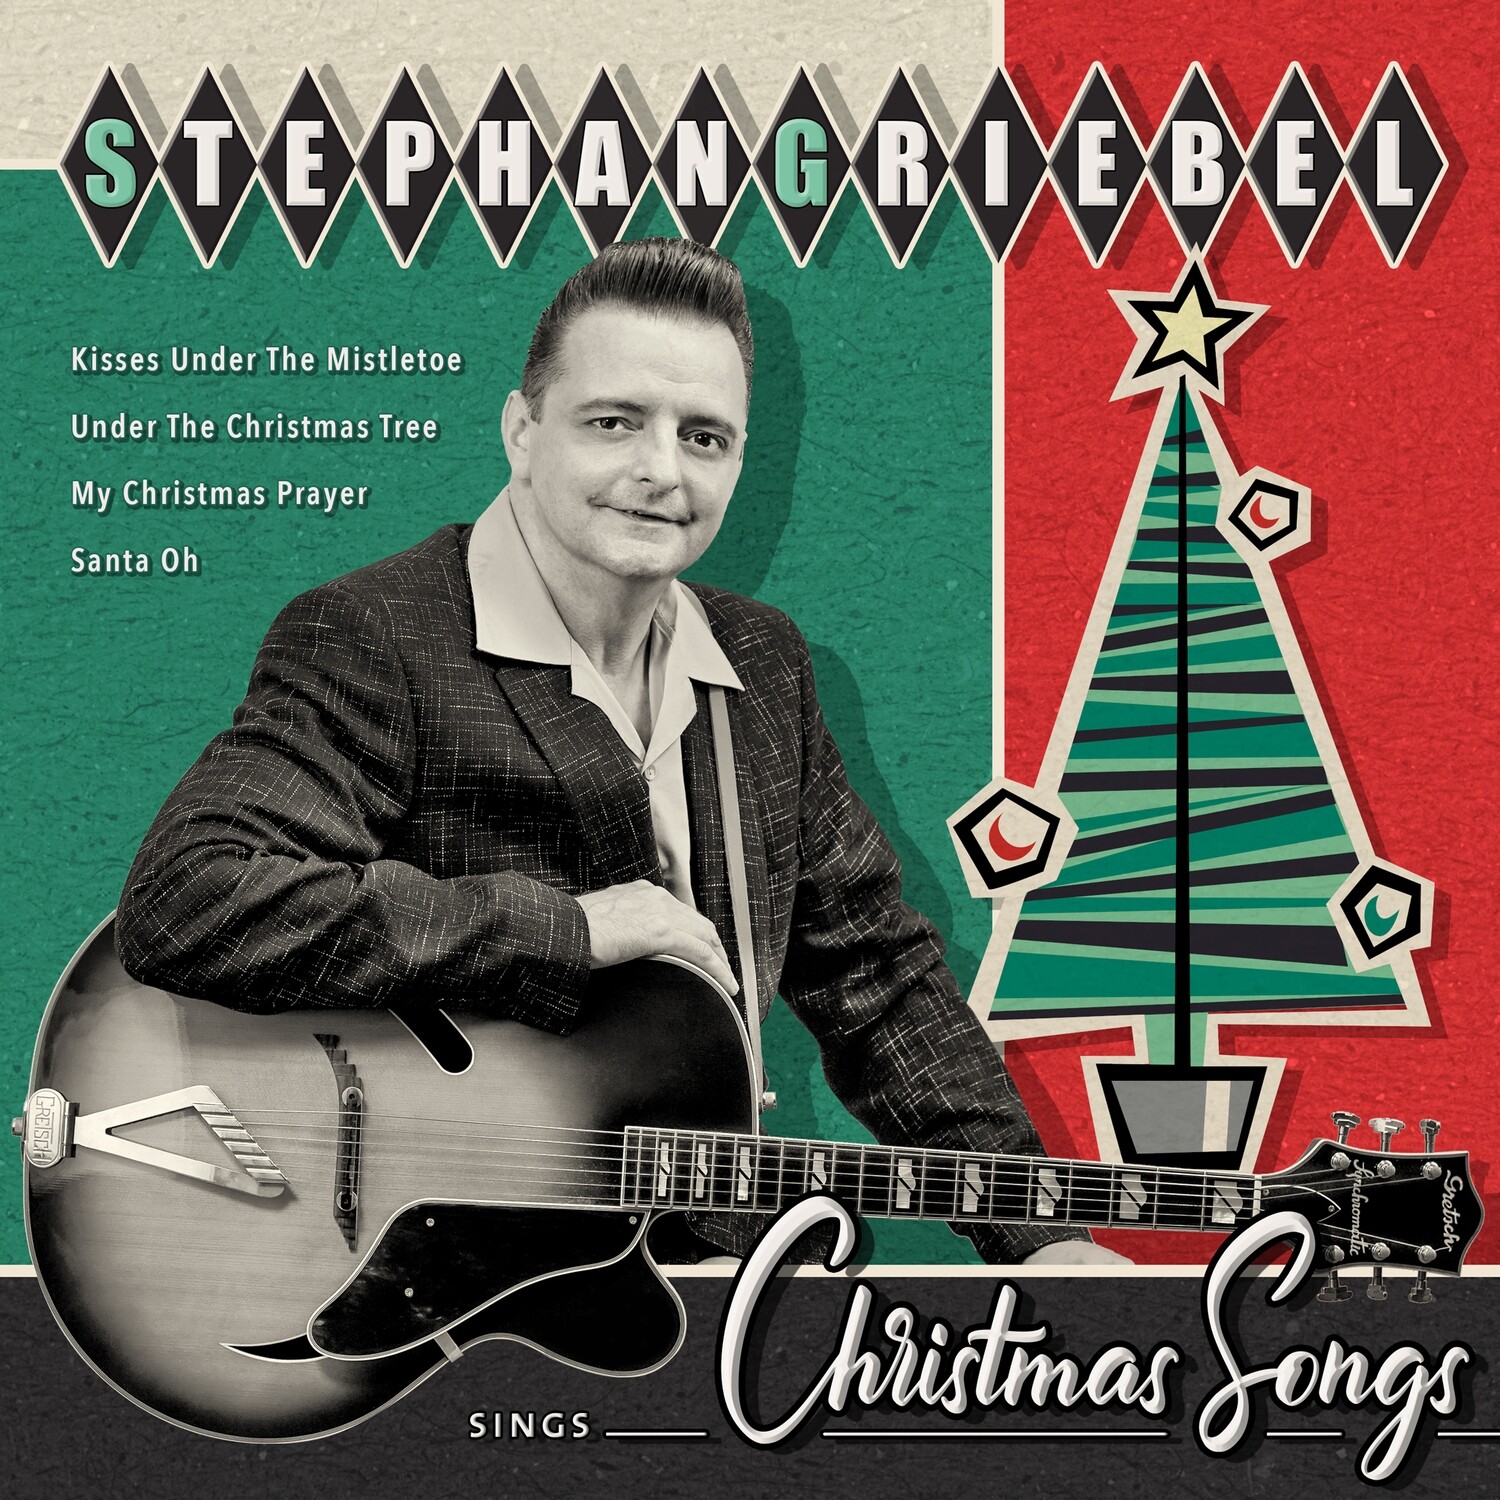 Stephan Griebel sings Christmas Songs